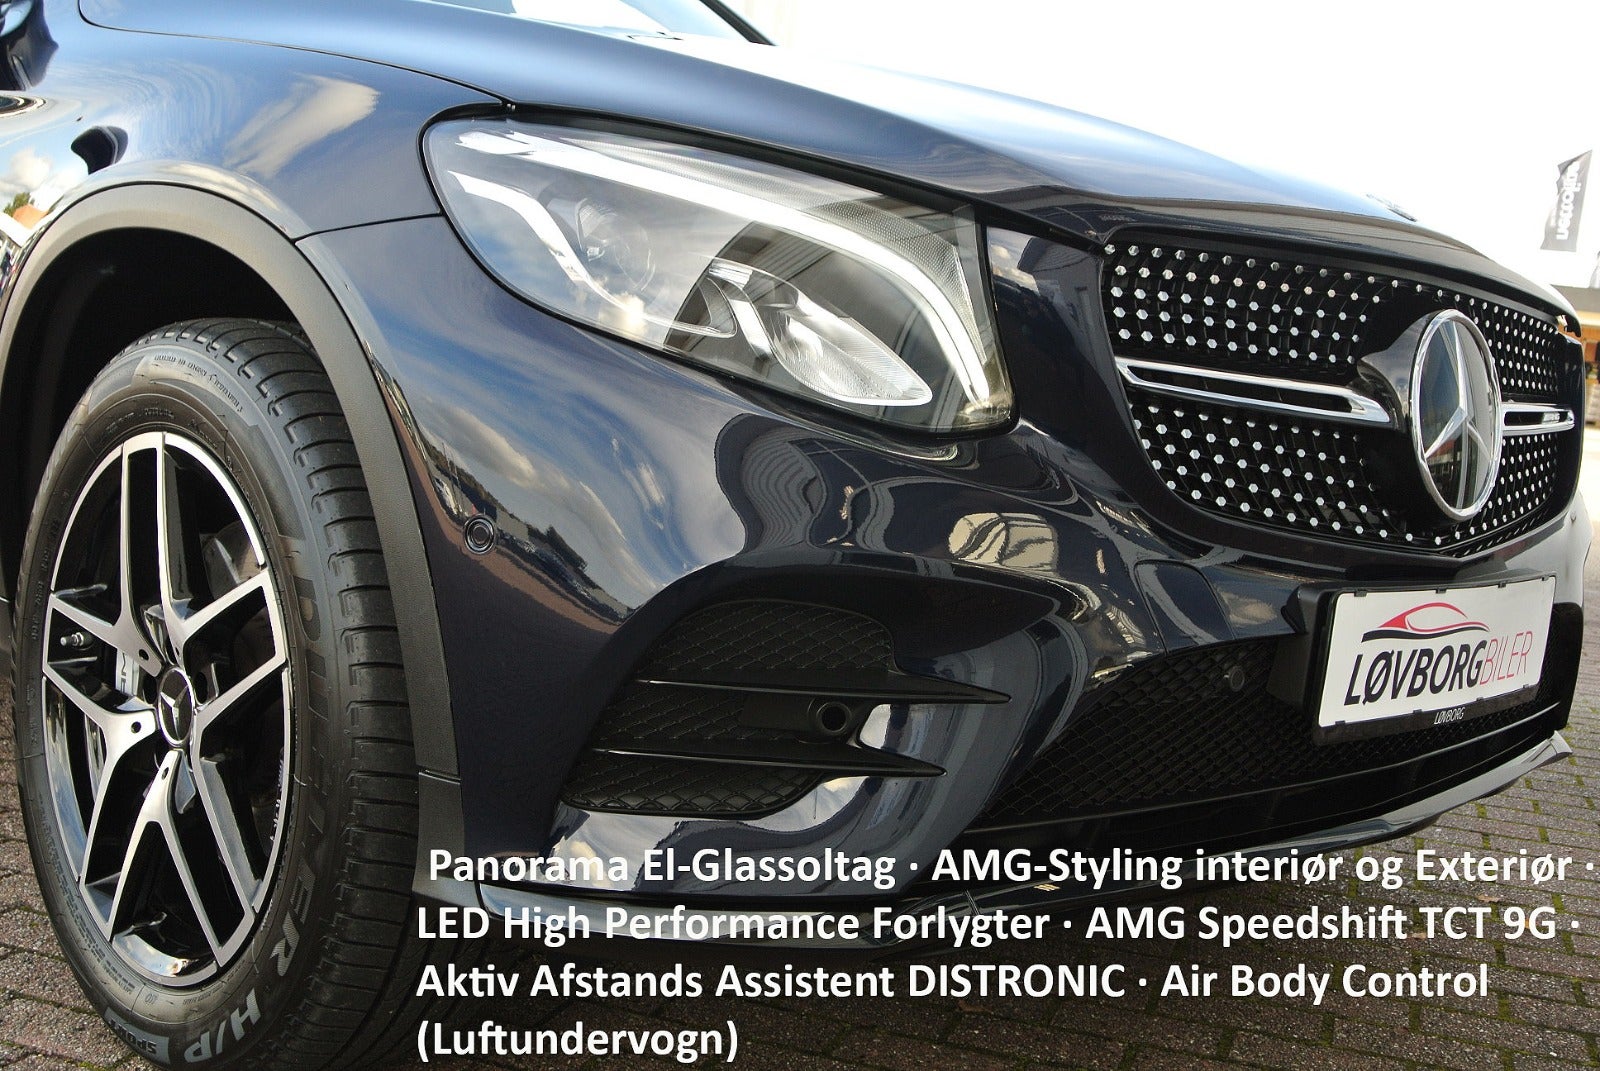 Brugt Mercedes GLC43 AMG aut. 5d - Bilbasen